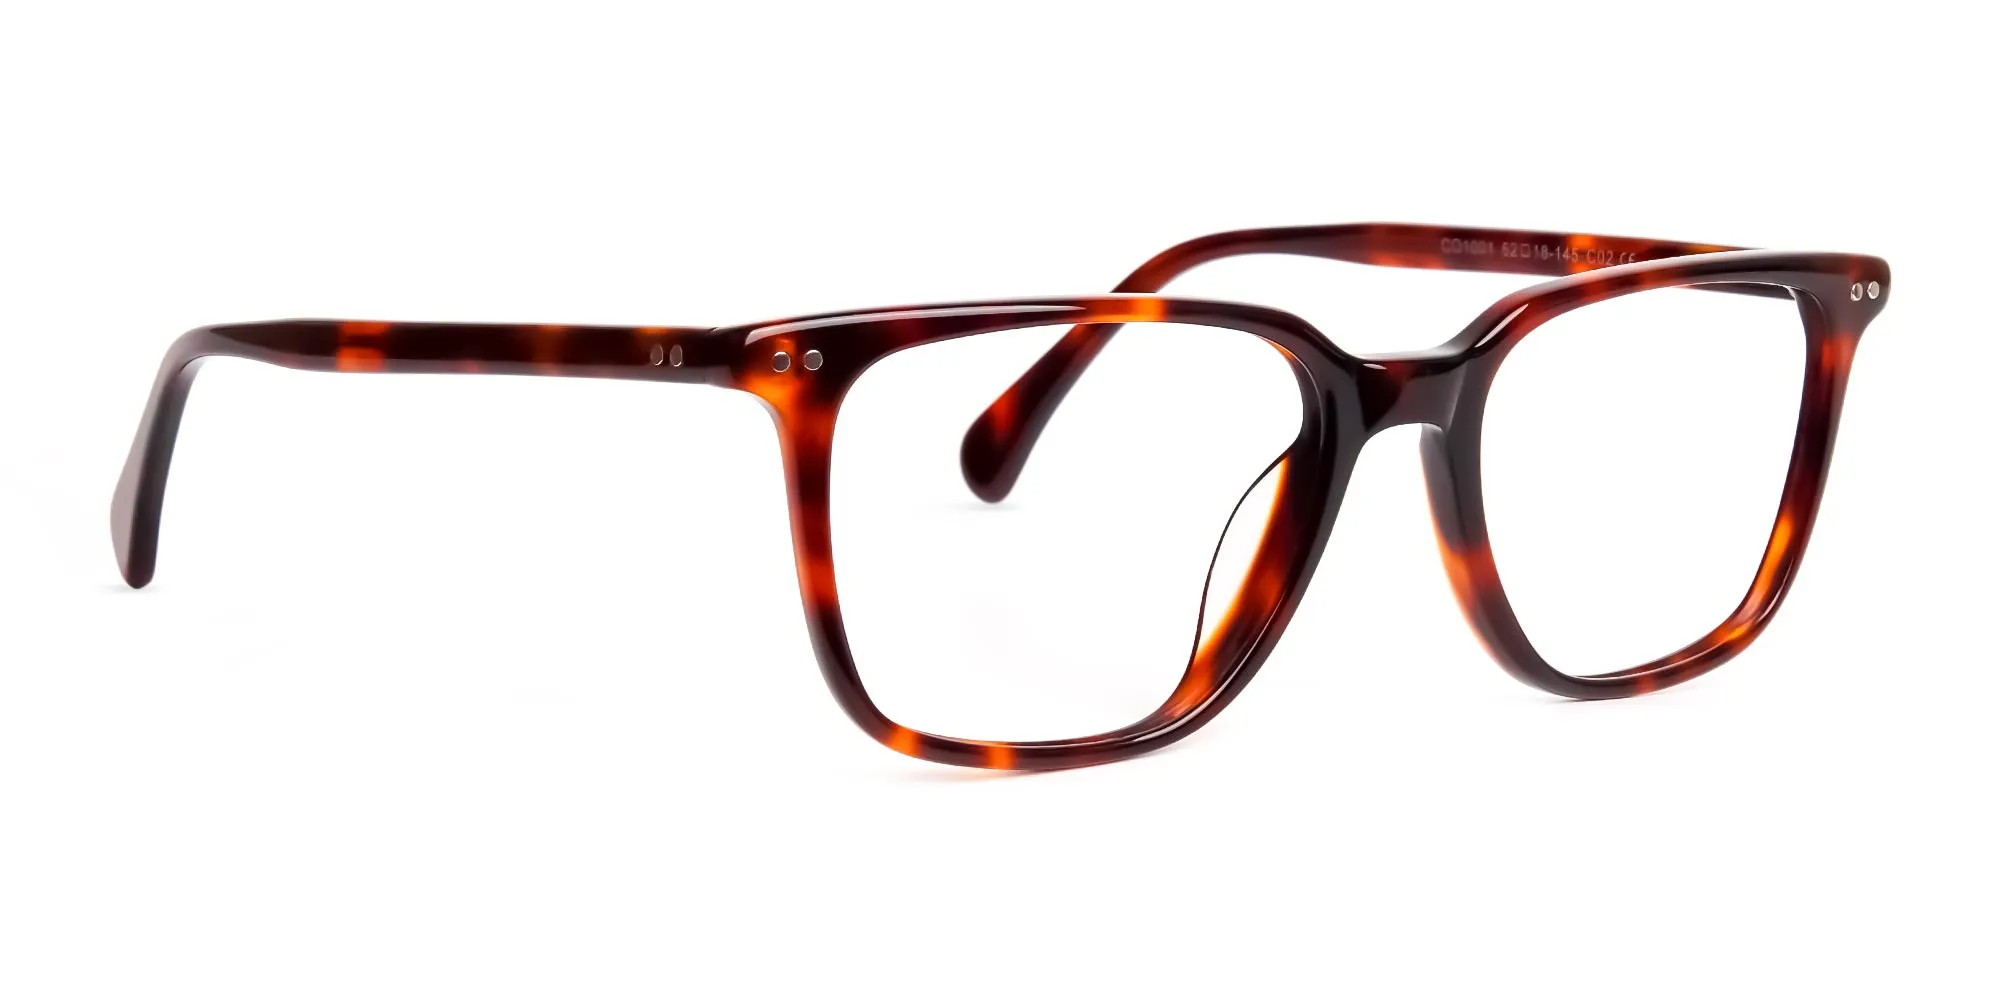 tortoise-shell-rectangular-full-rim-glasses-frames-2